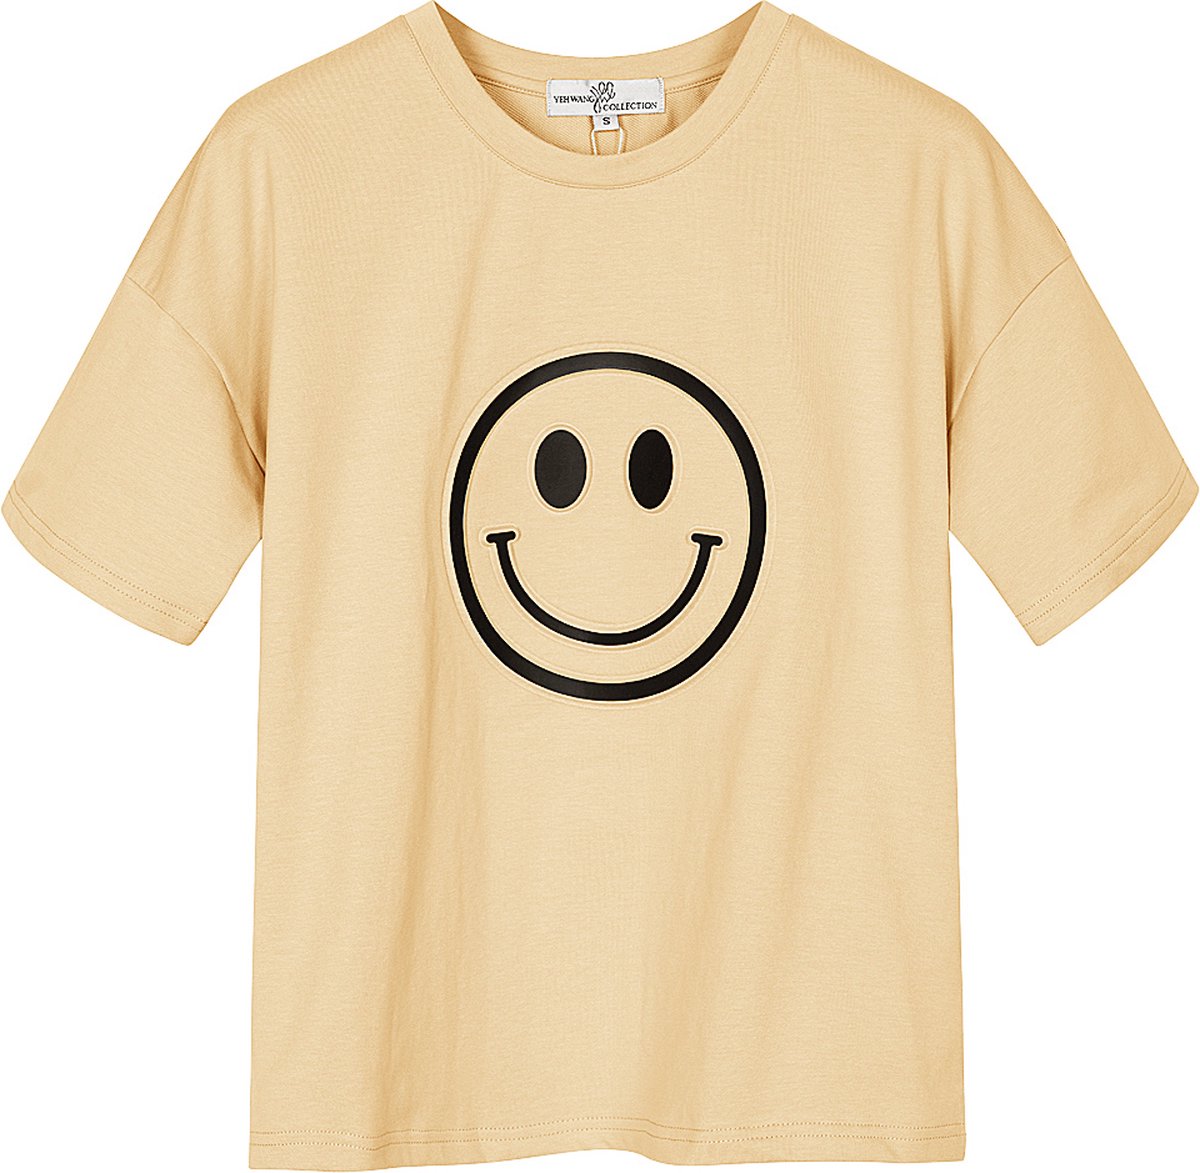 Yehwang - T-shirt met smiley - Crème - Maat: L